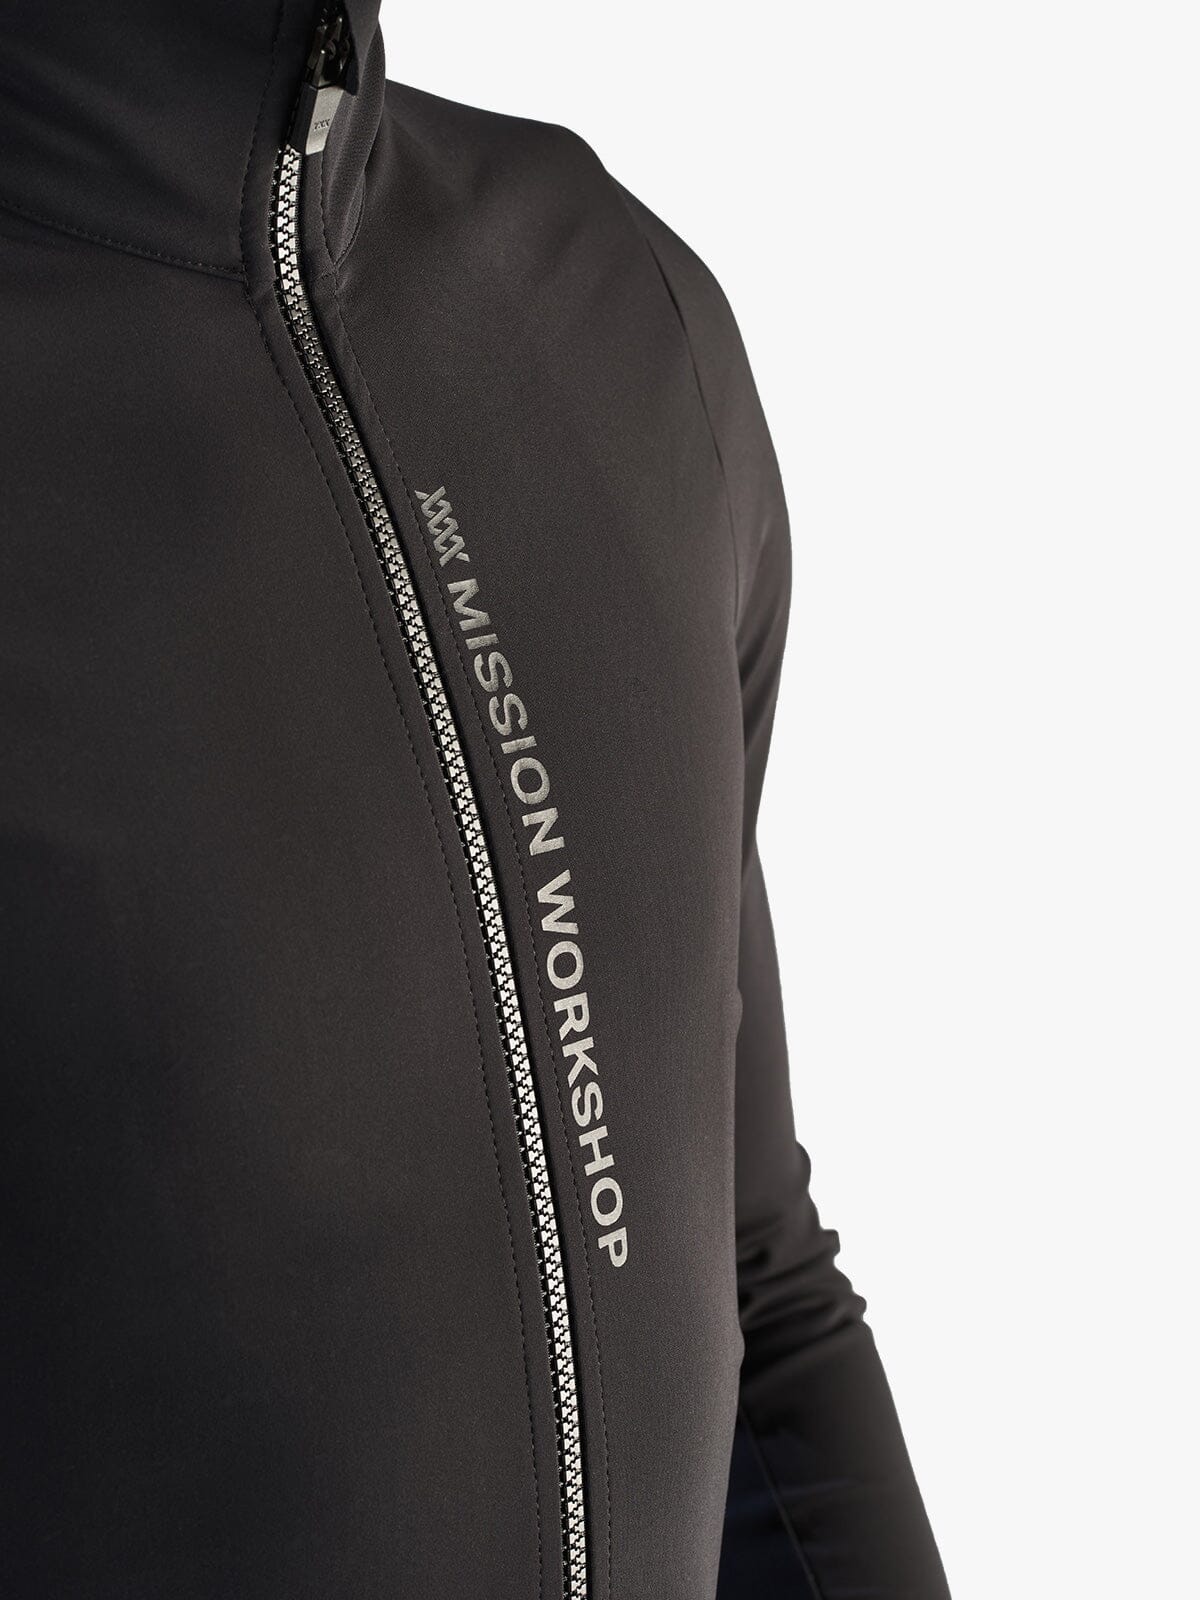 Range Jacket Men's by Mission Workshop - Weatherproof Bags & Technical Apparel - San Francisco & Los Angeles - Construit pour durer - Garanti pour toujours